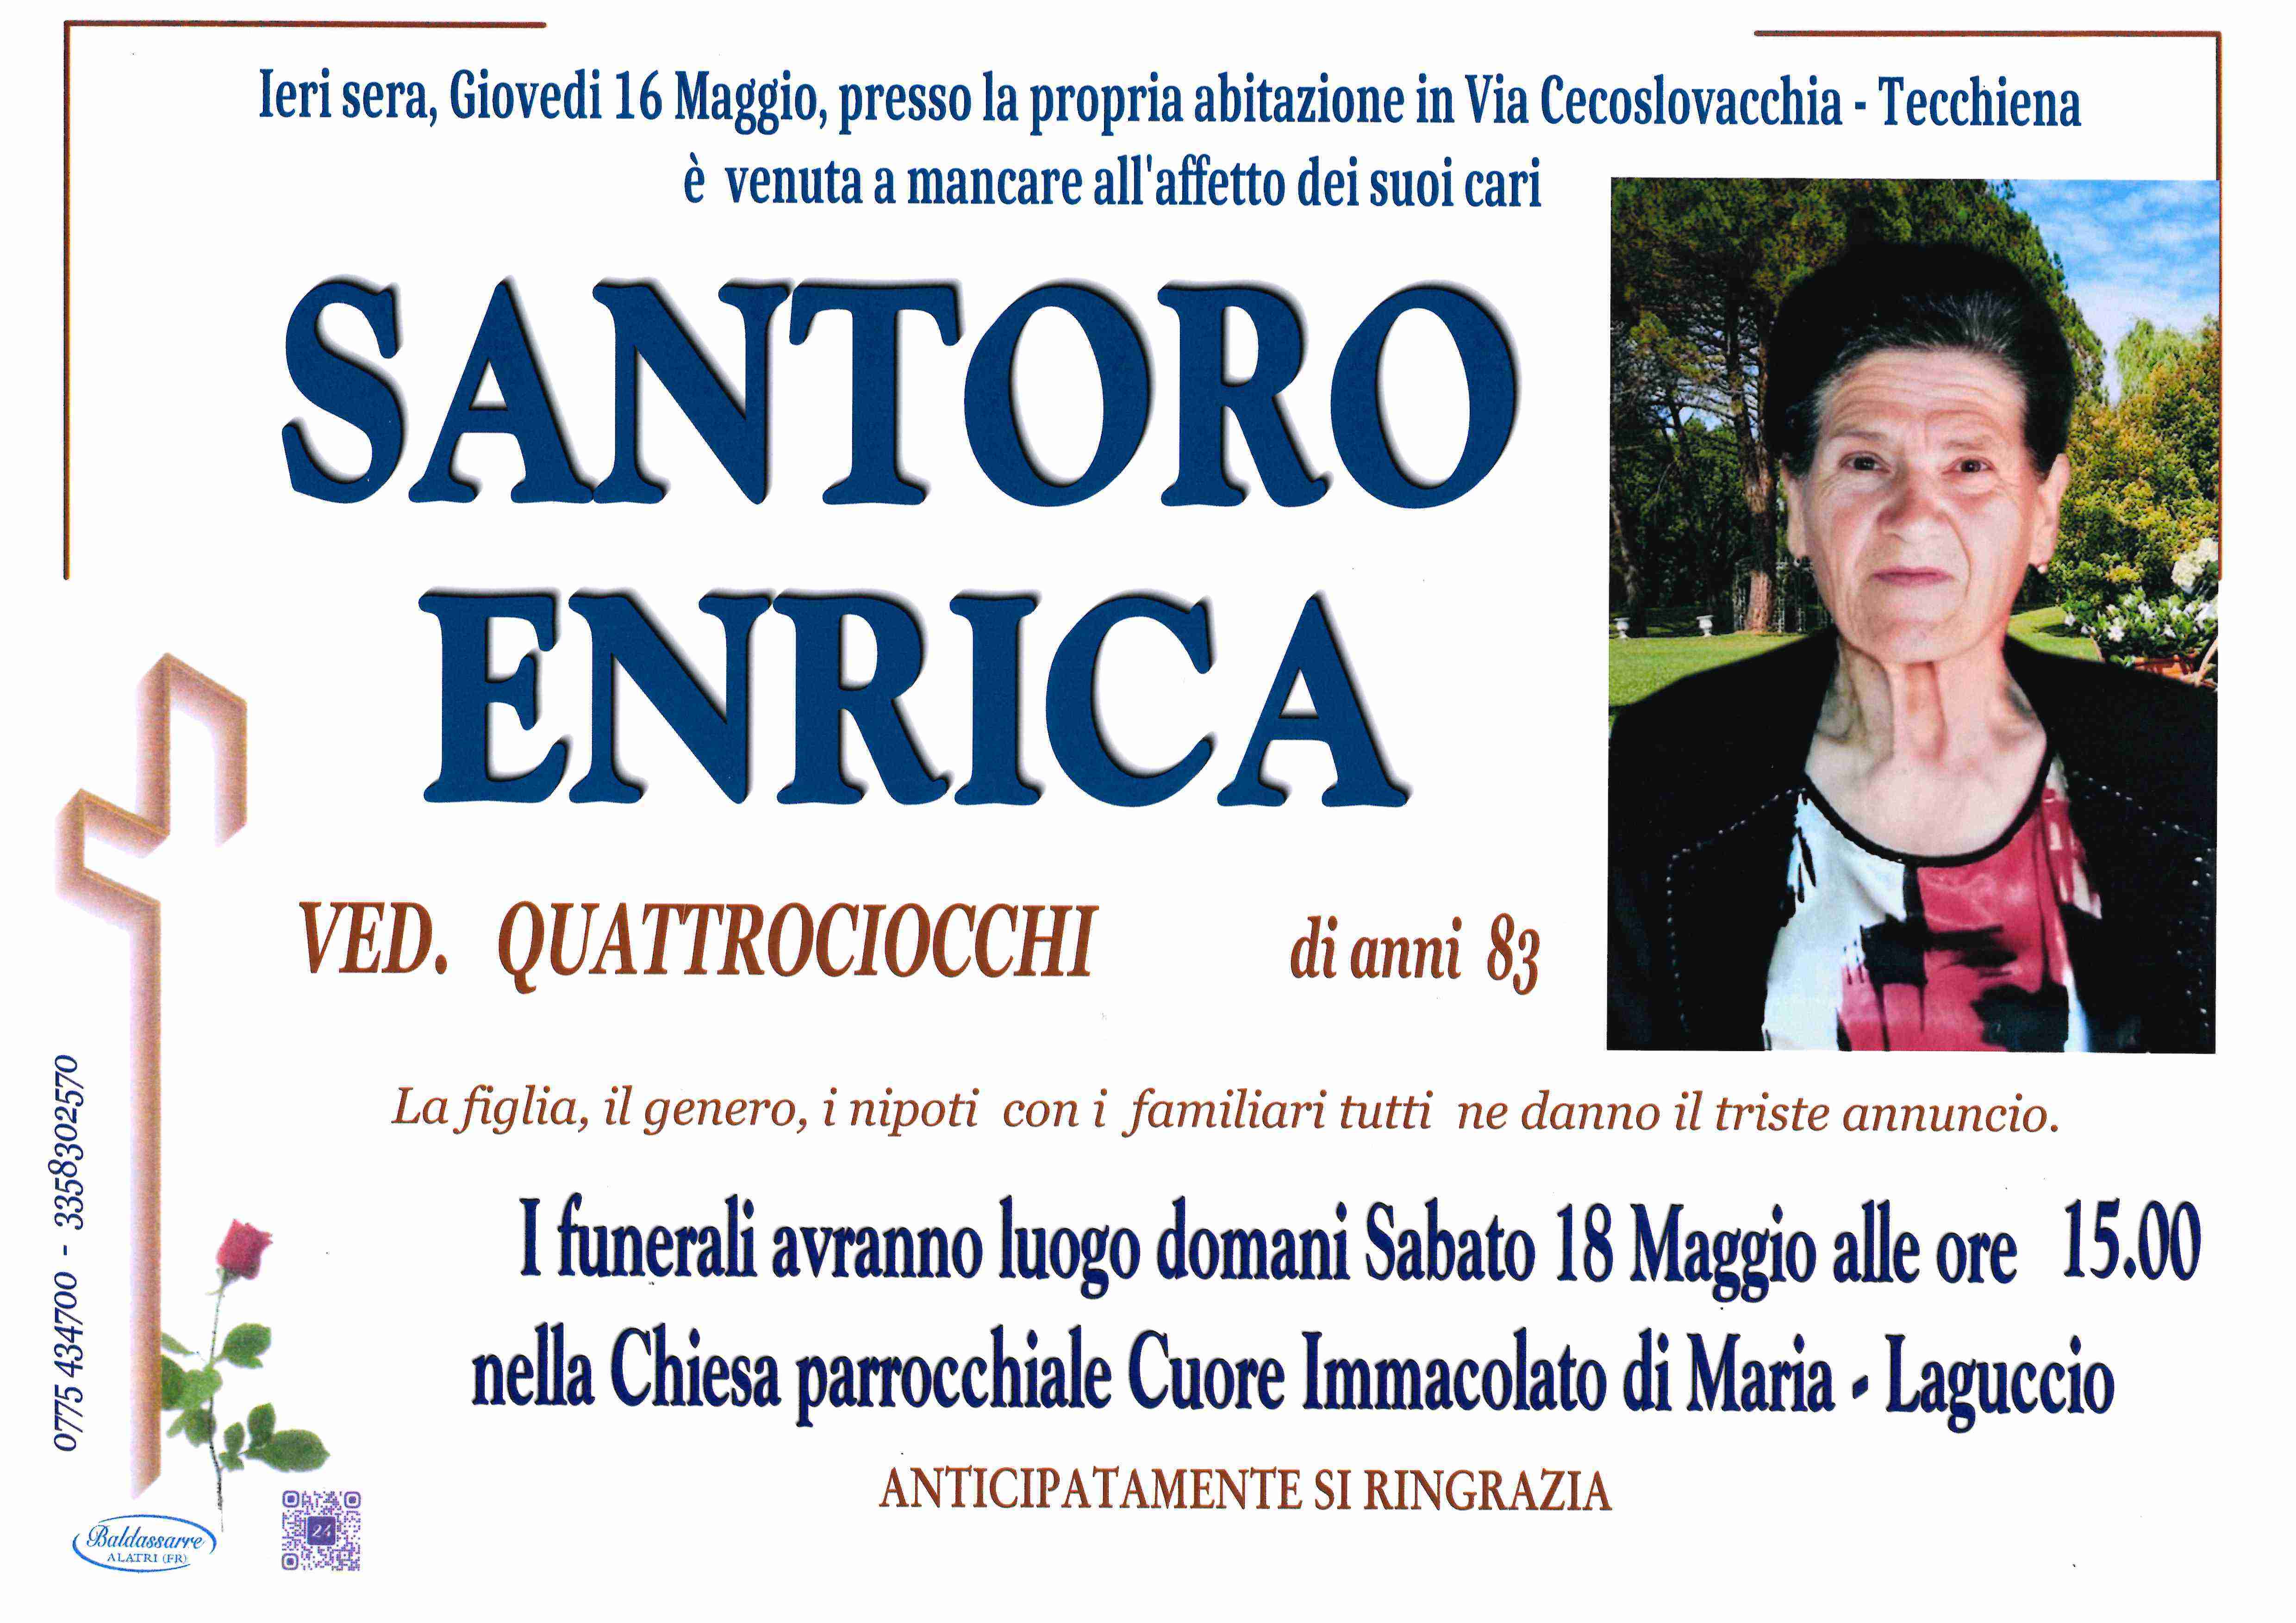 Enrica Santoro